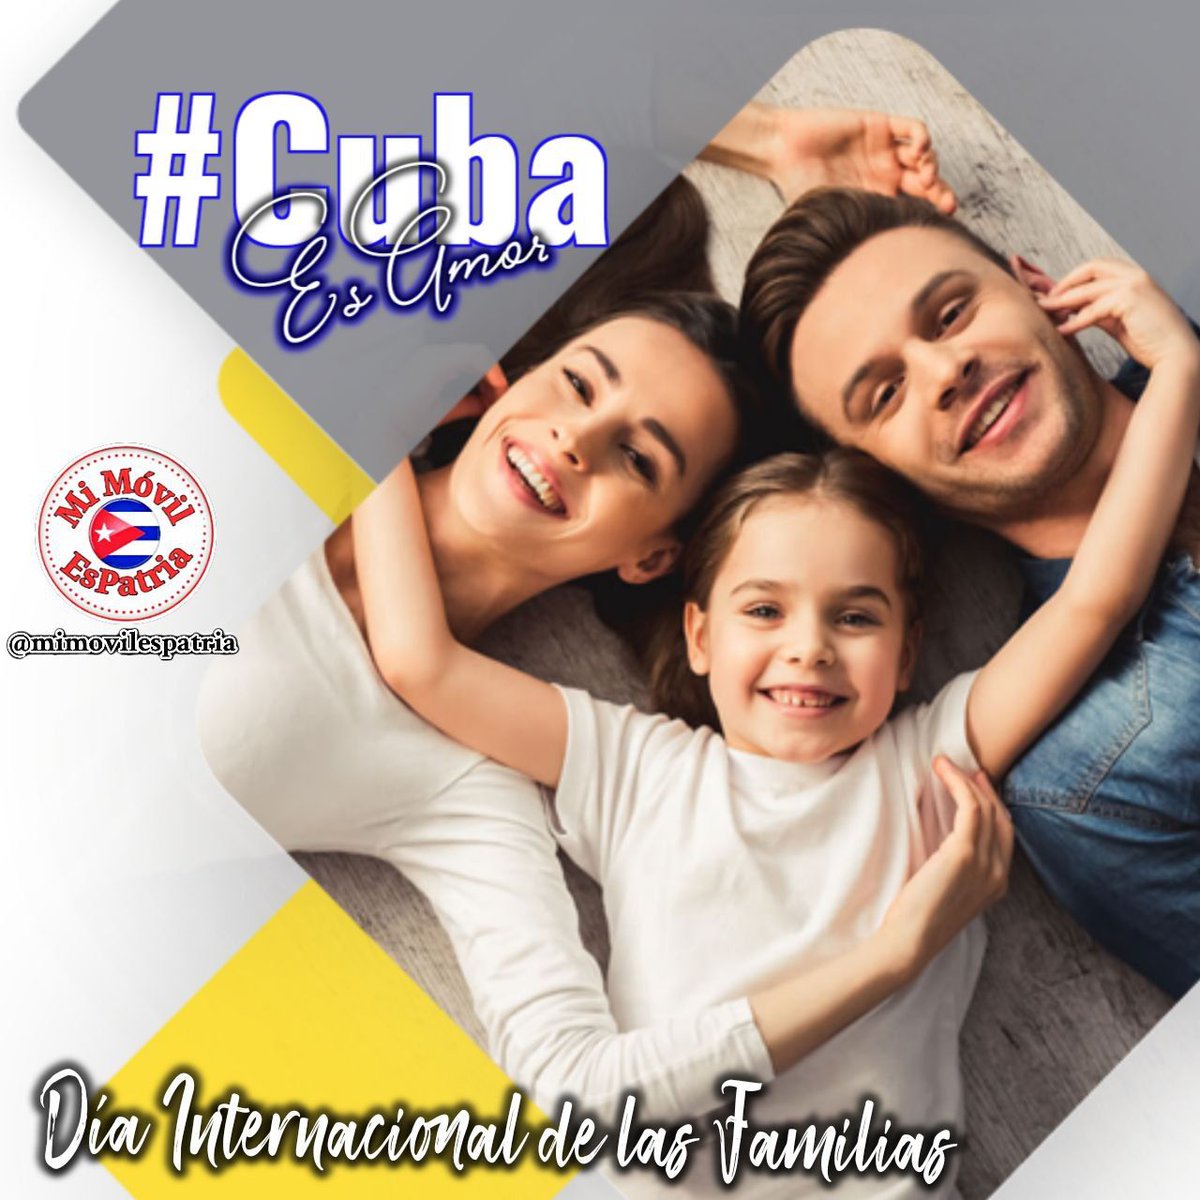 Conmemoramos el día internacional de la familia, razón más que suficiente, para juntos seguir luchando por una sociedad cada vez más justa e inclusiva, porque eso somos una gran familia. #CubaEsAmor #CiegodeAvila #Cuba